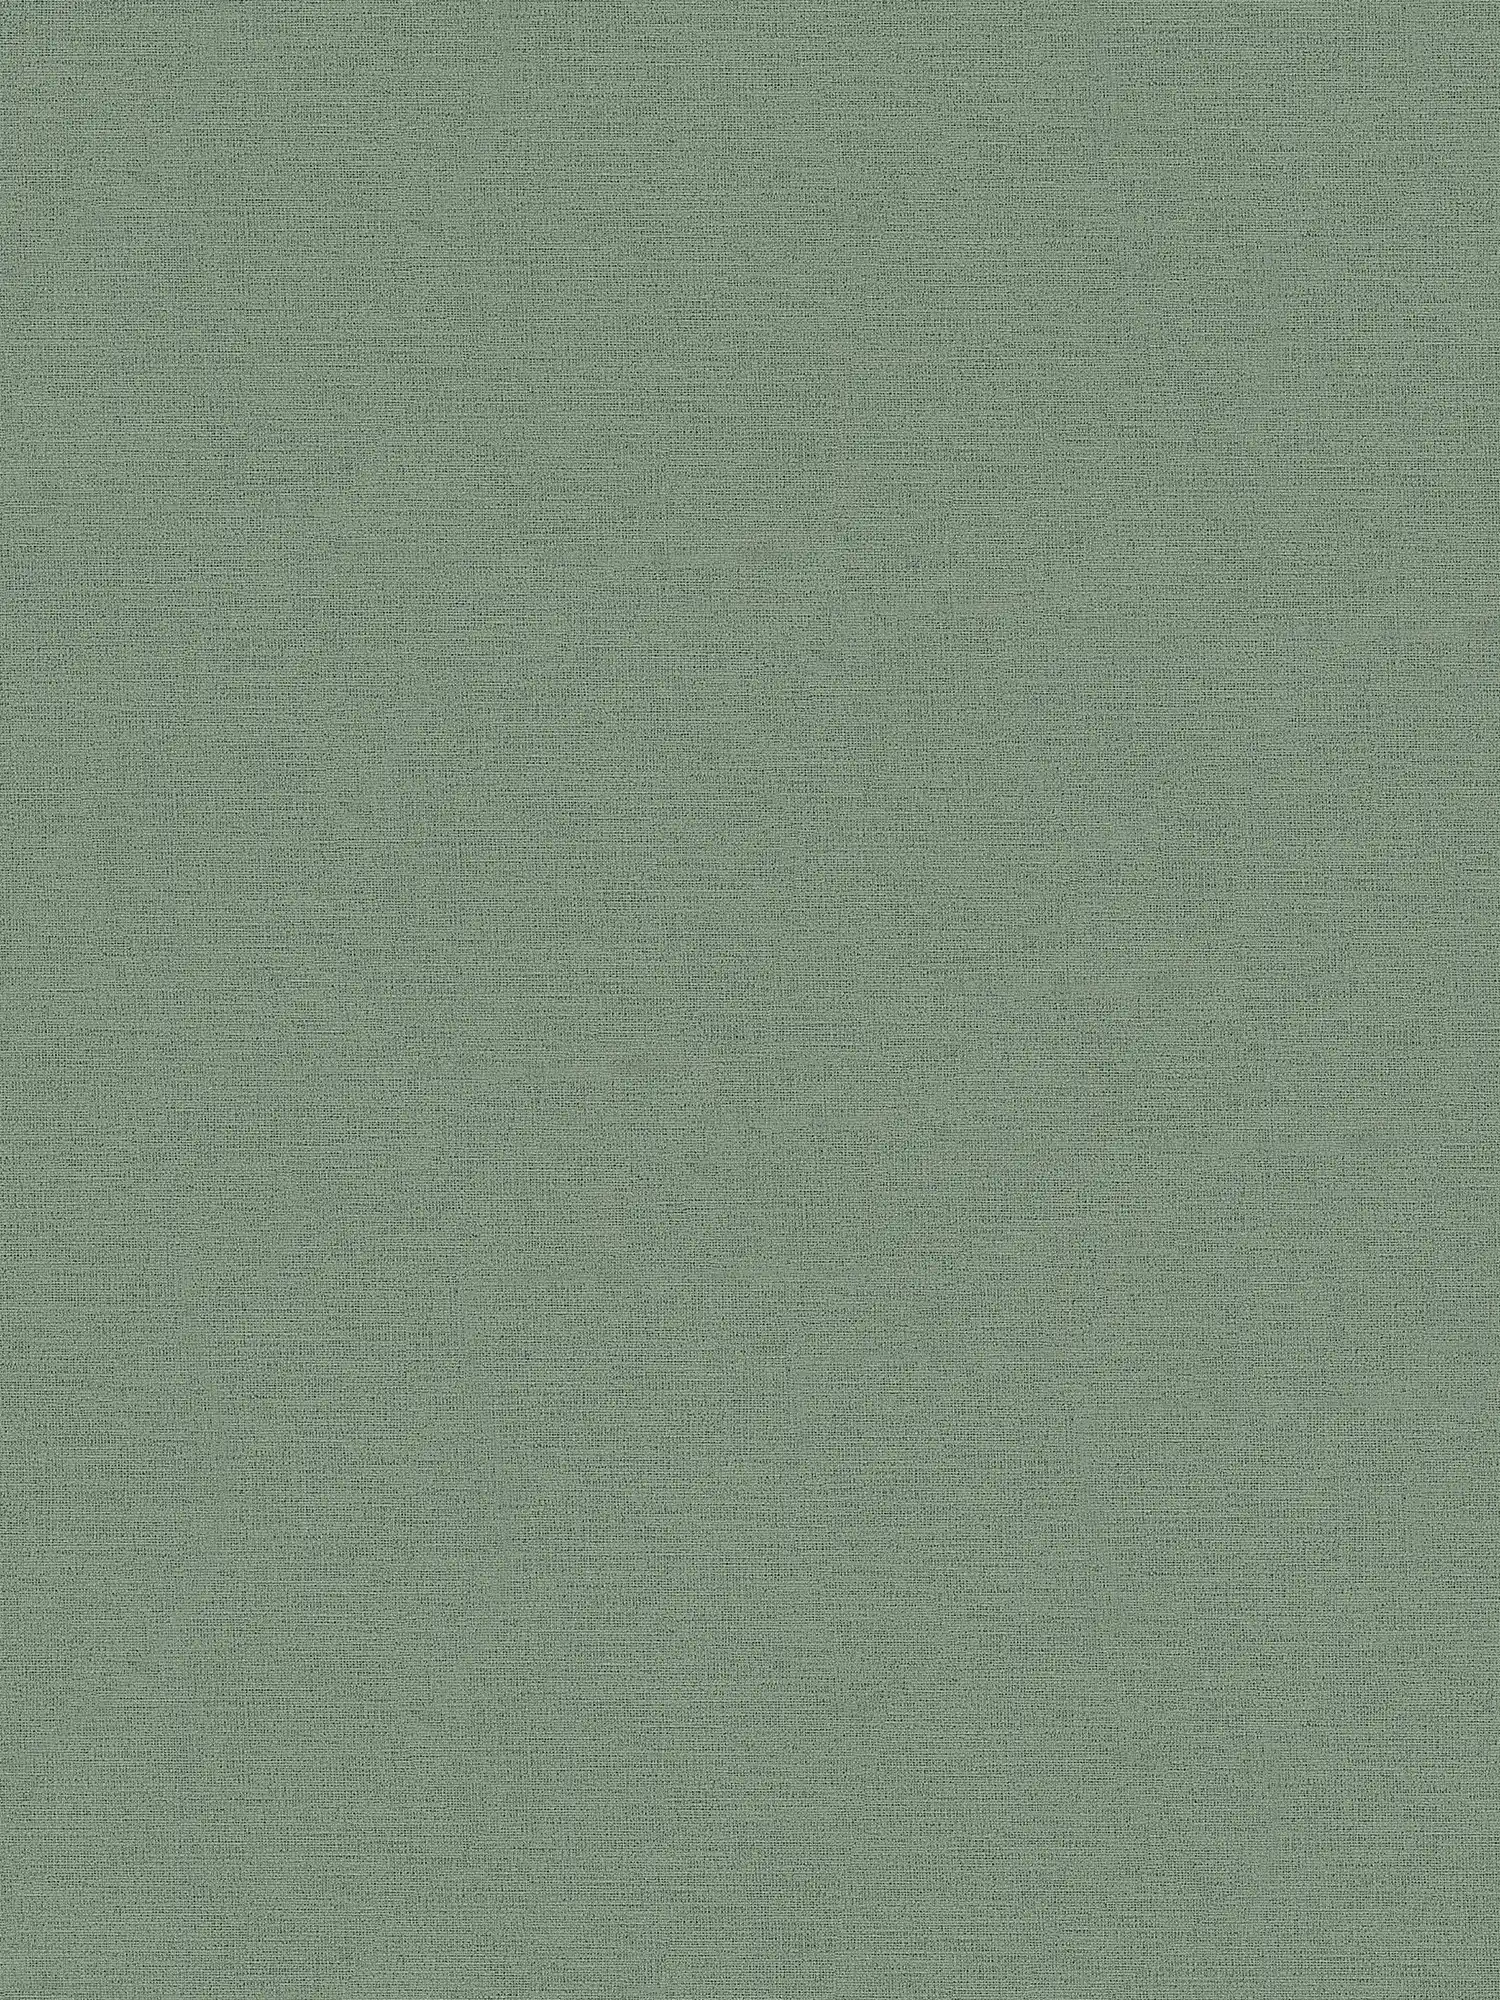 Papel pintado gris verde oliva, mate y con óptica textil
